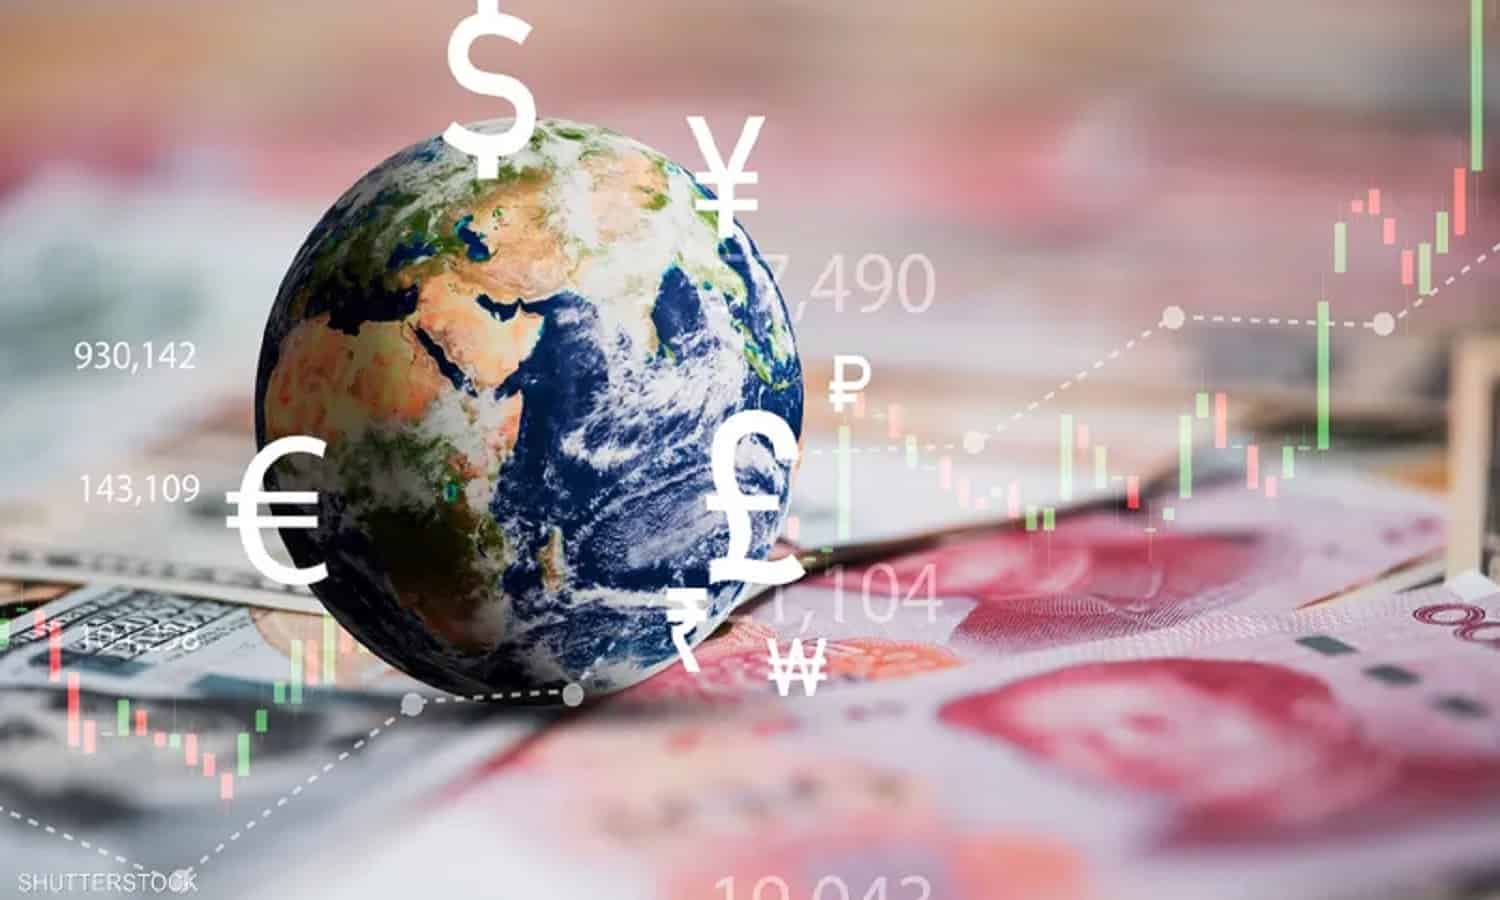 ضبابية مشهد الاقتصاد العالمي تدفع للأخذ بالحكمة الصينية
